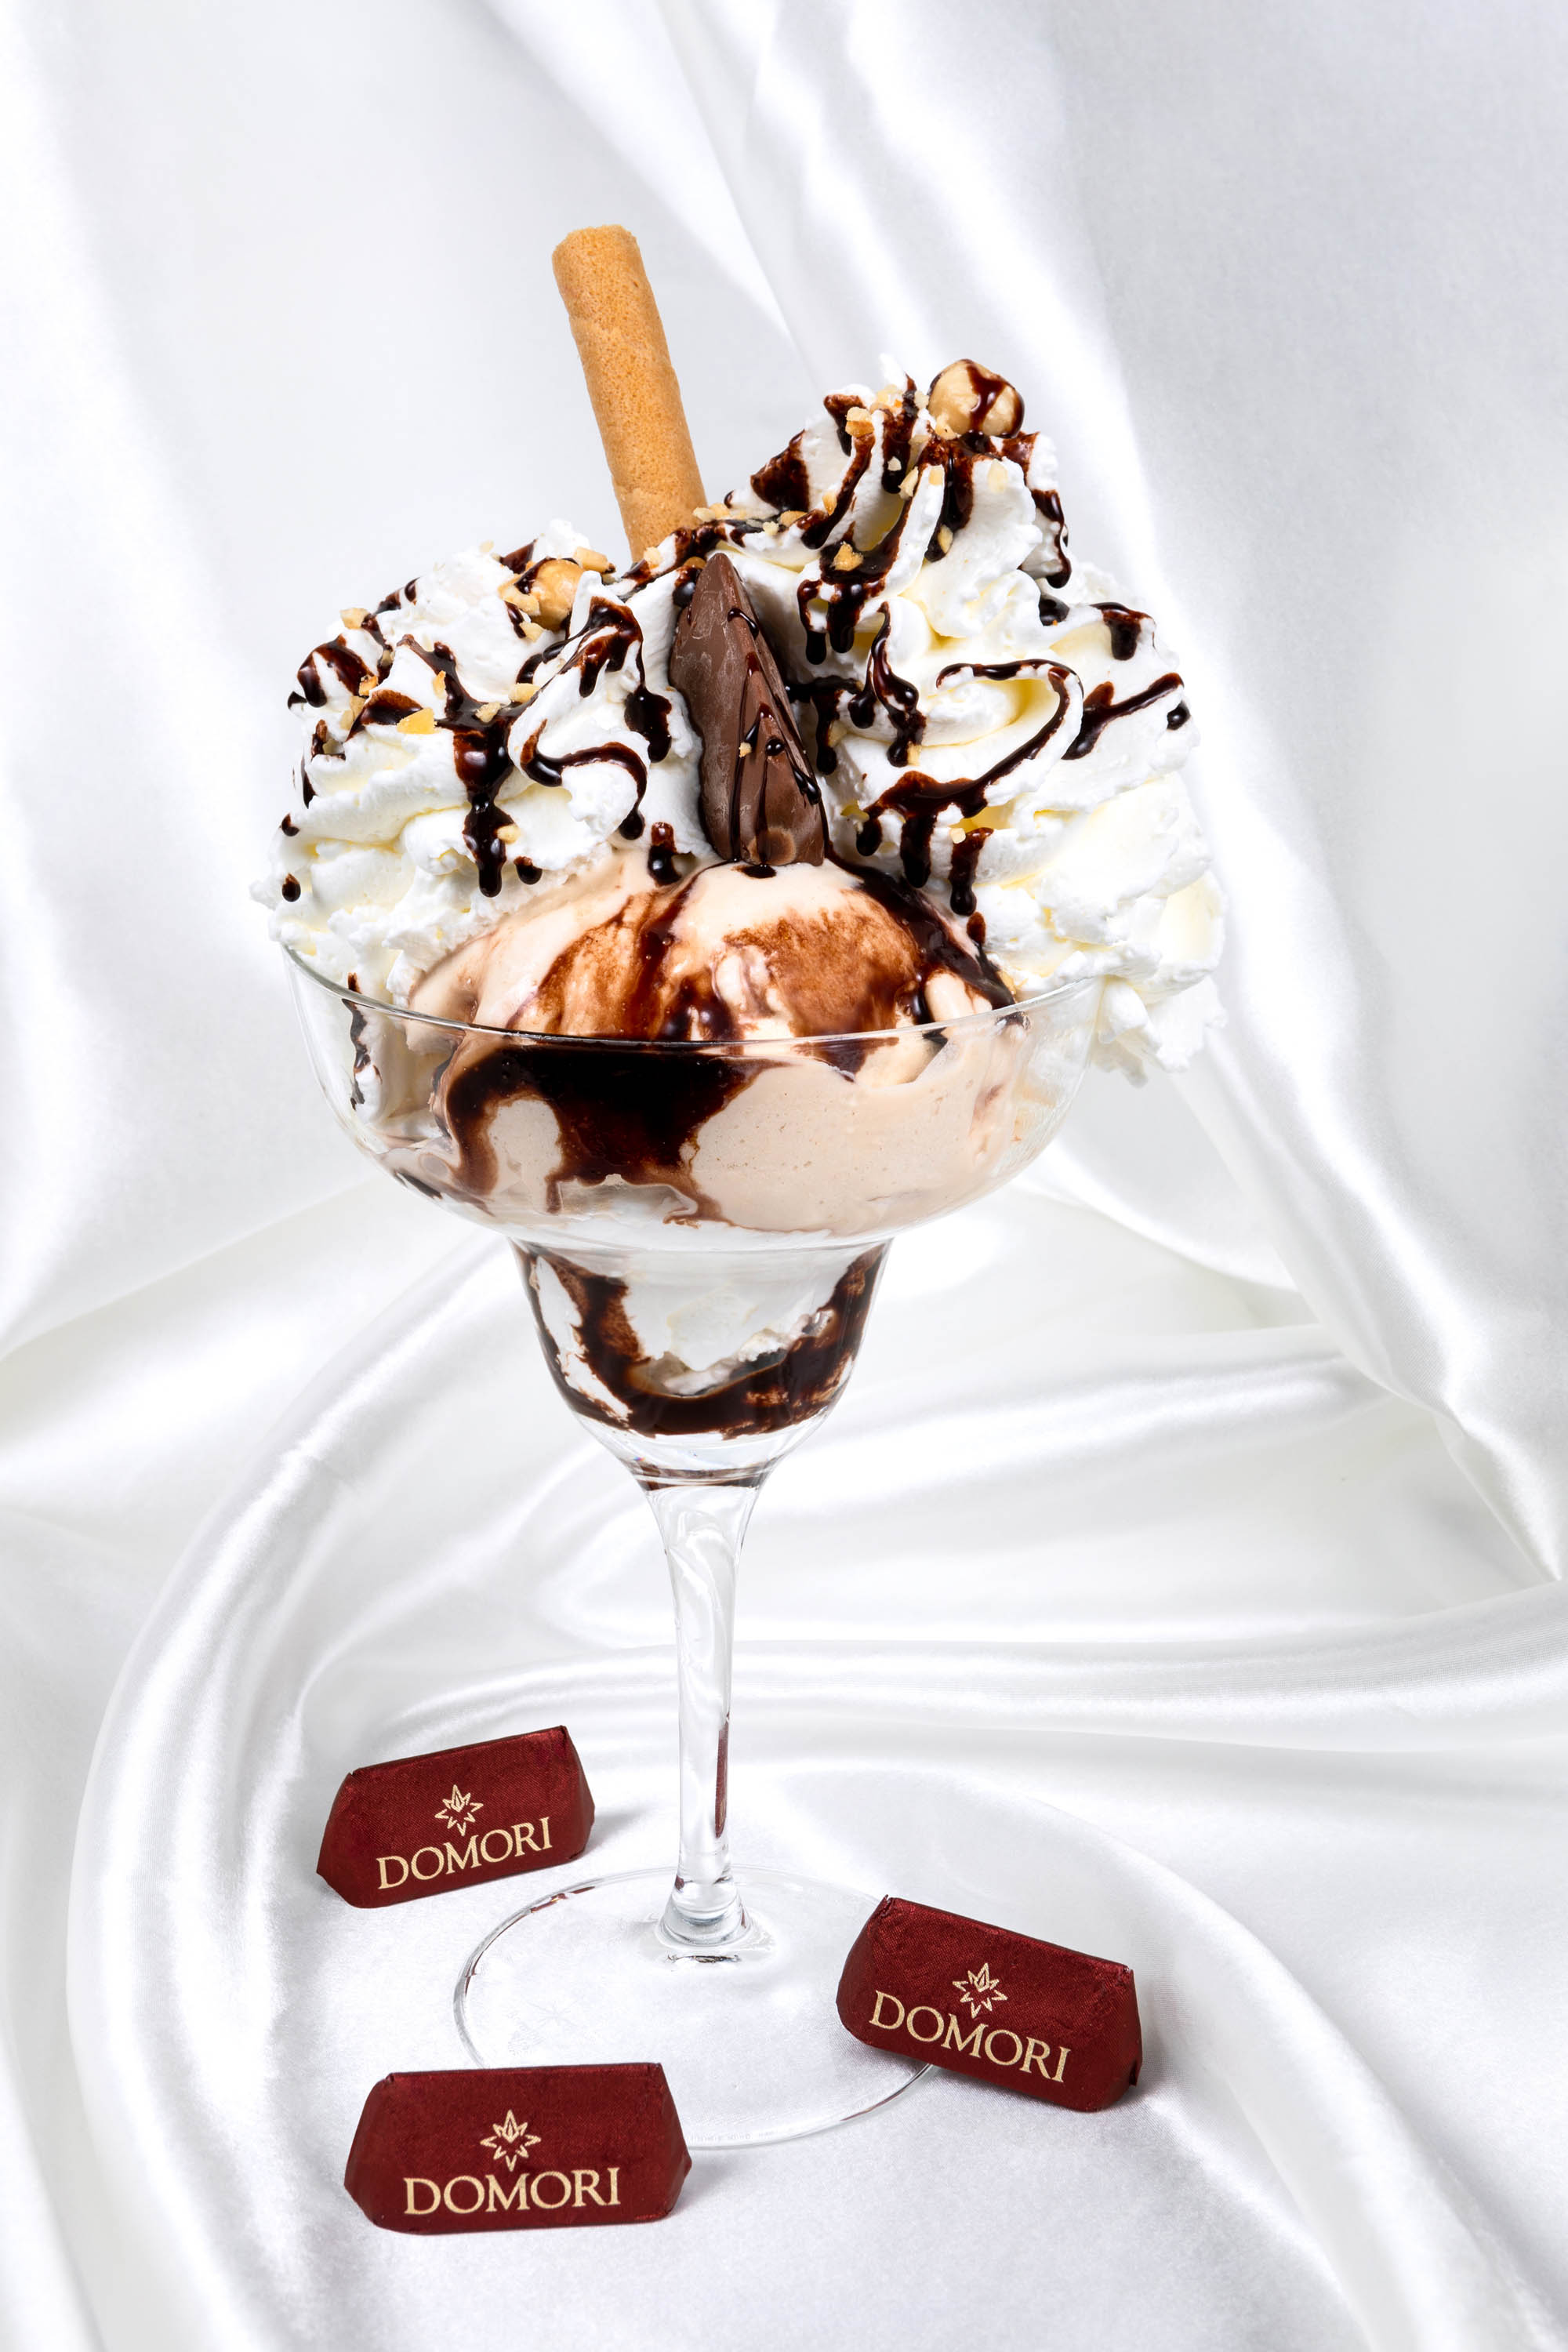 Servizio fotografico coppa gelato variegata al cioccolato con gianduiotti cioccolatini domori